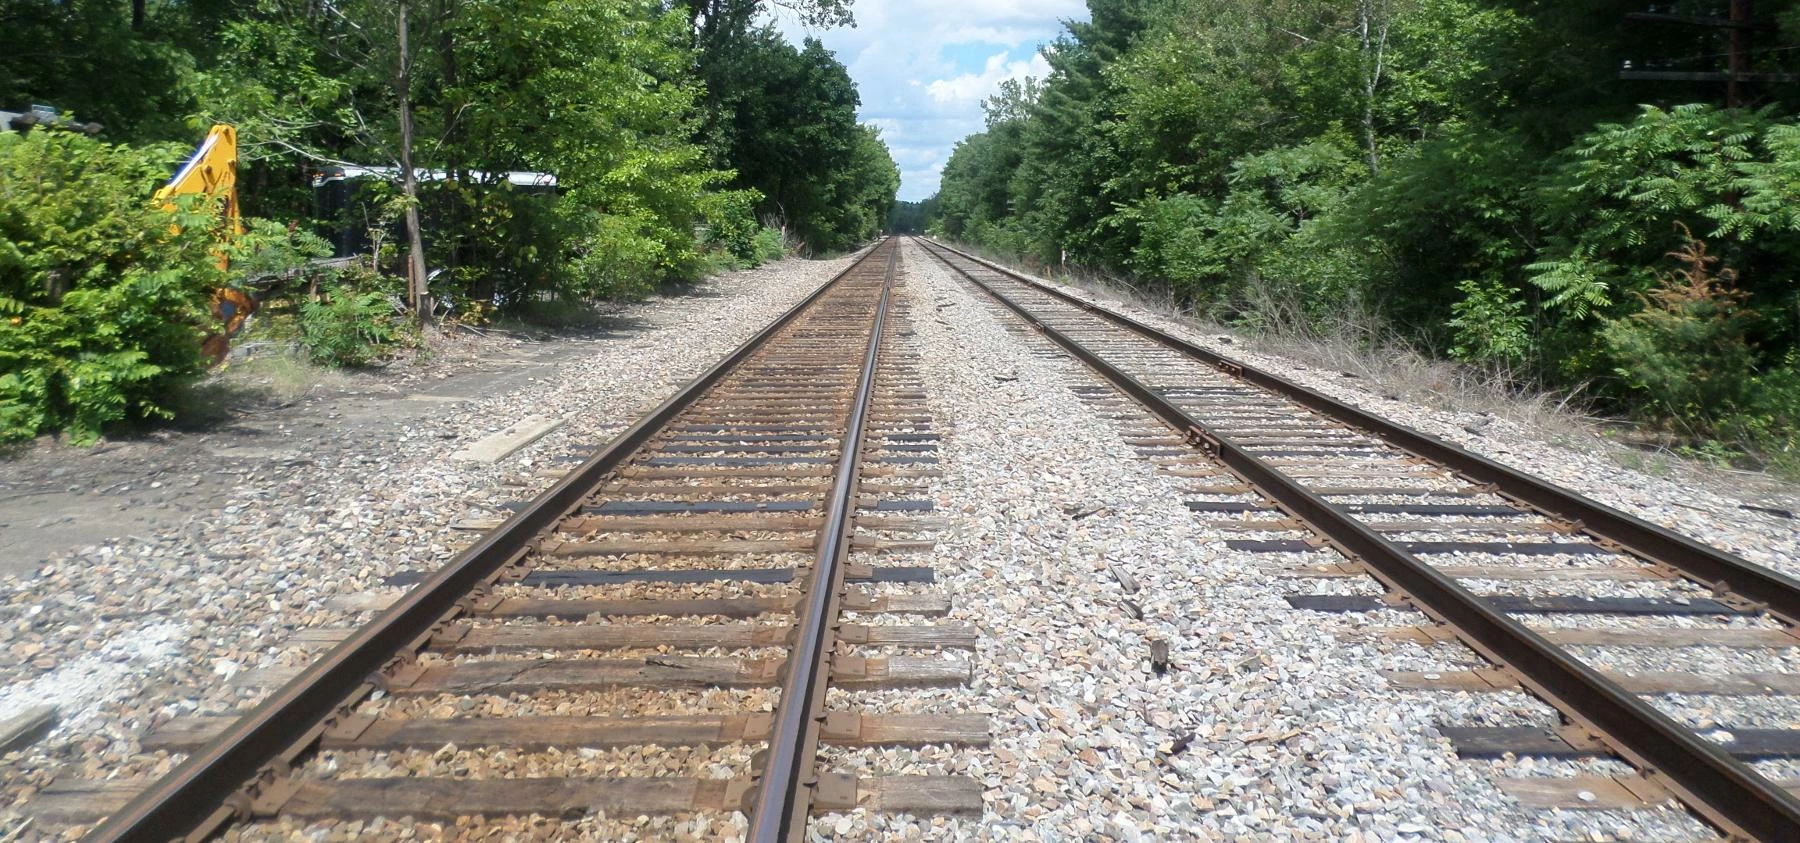 CPRail tracks, Columbia St., Ballston Spa NY